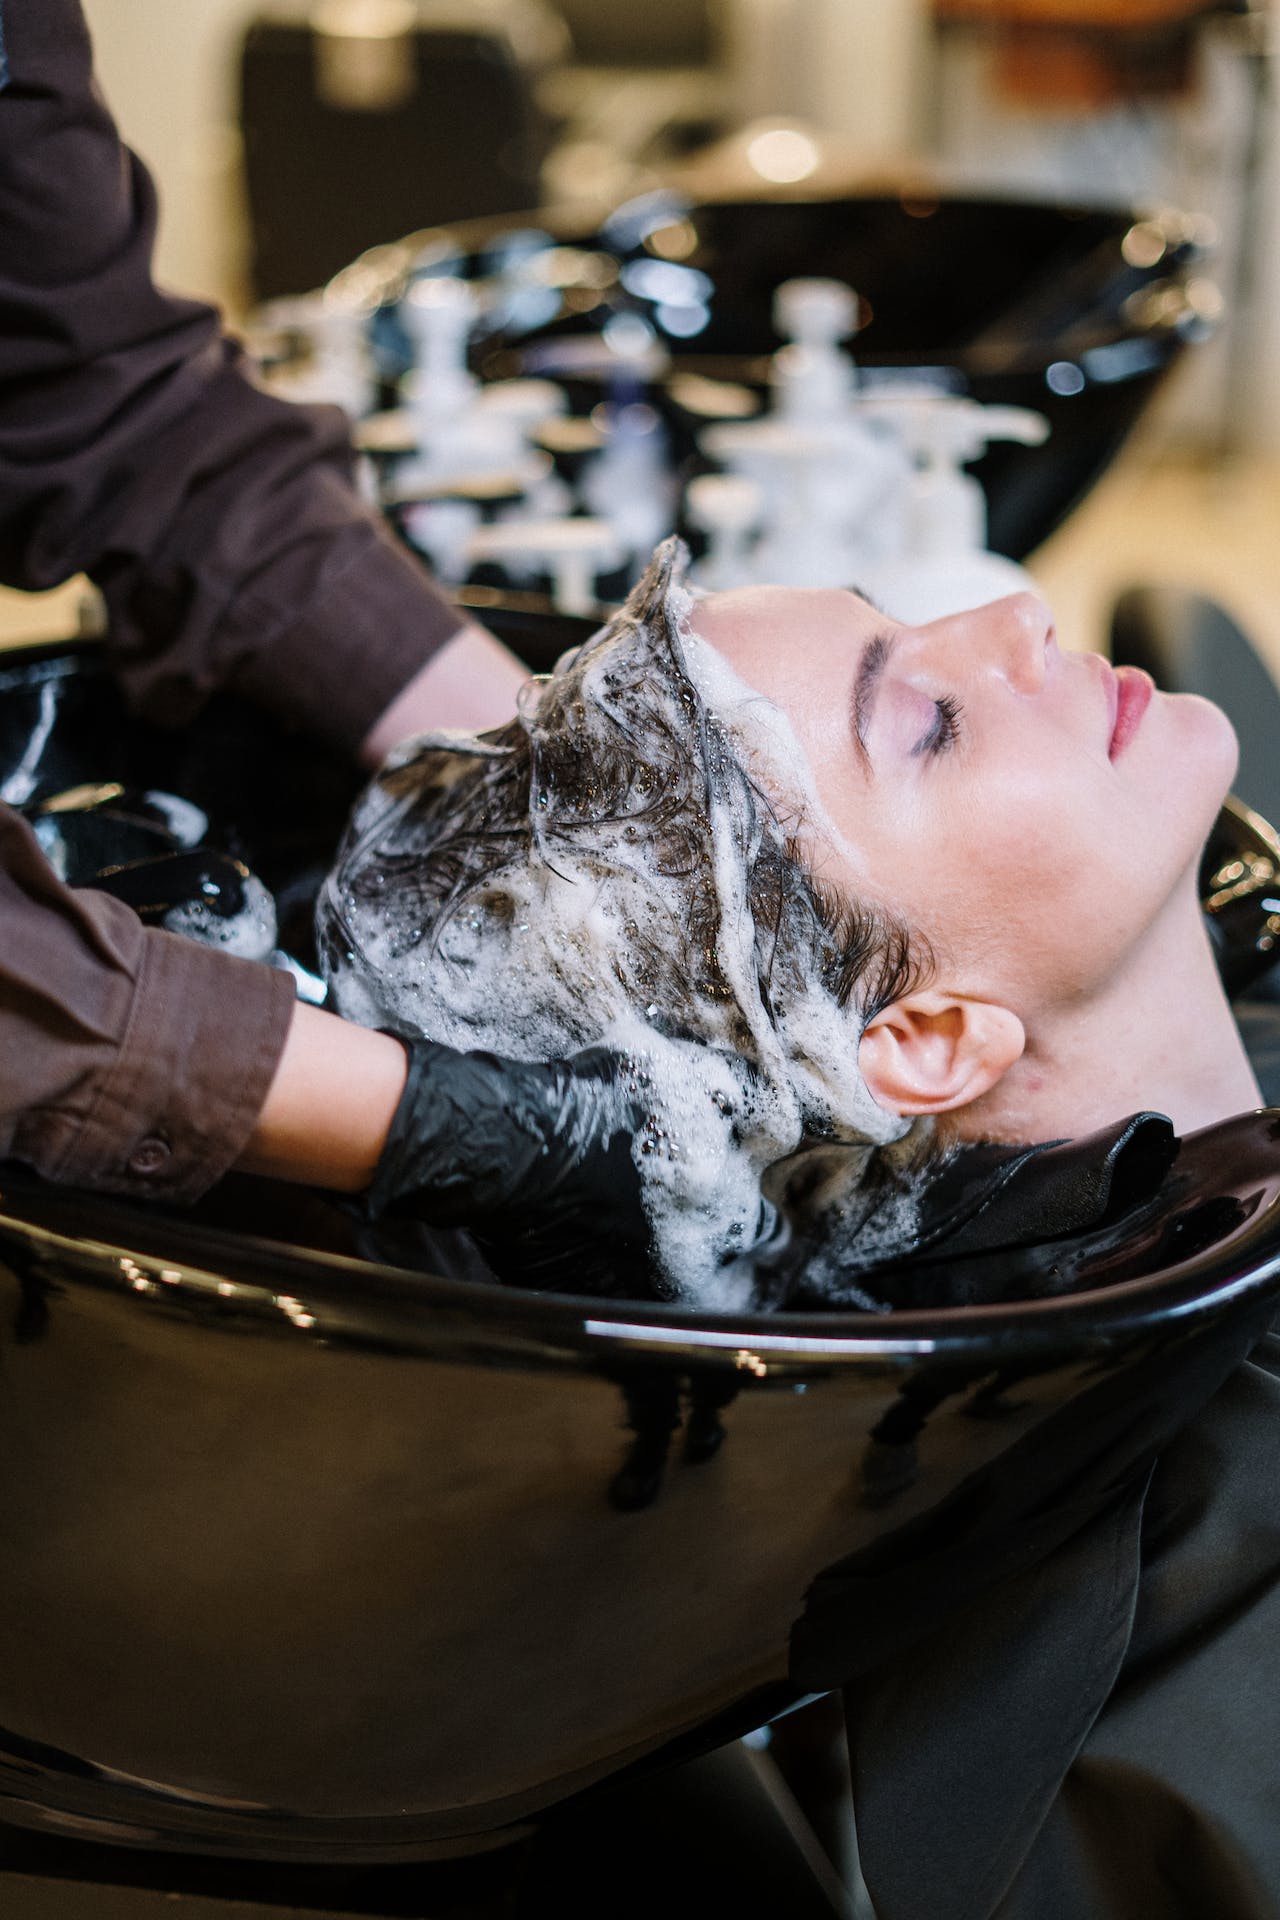 Choisir un grossiste esthétique pour coiffeurs : une décision stratégique basée sur la qualité des produits